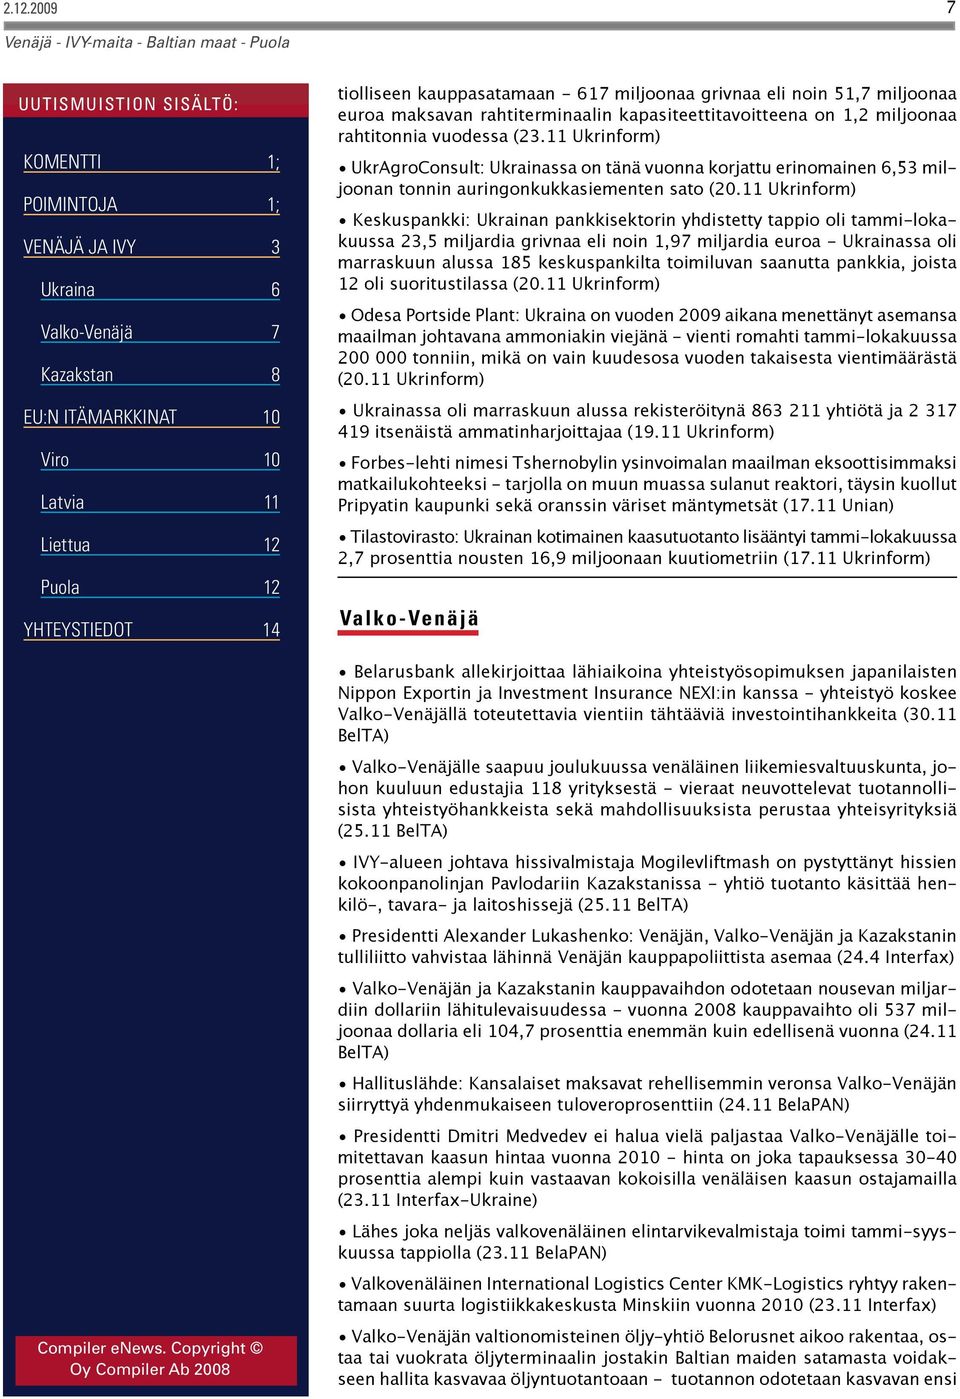 11 Ukrinform) Keskuspankki: Ukrainan pankkisektorin yhdistetty tappio oli tammi-lokakuussa 23,5 miljardia grivnaa eli noin 1,97 miljardia euroa - Ukrainassa oli marraskuun alussa 185 keskuspankilta